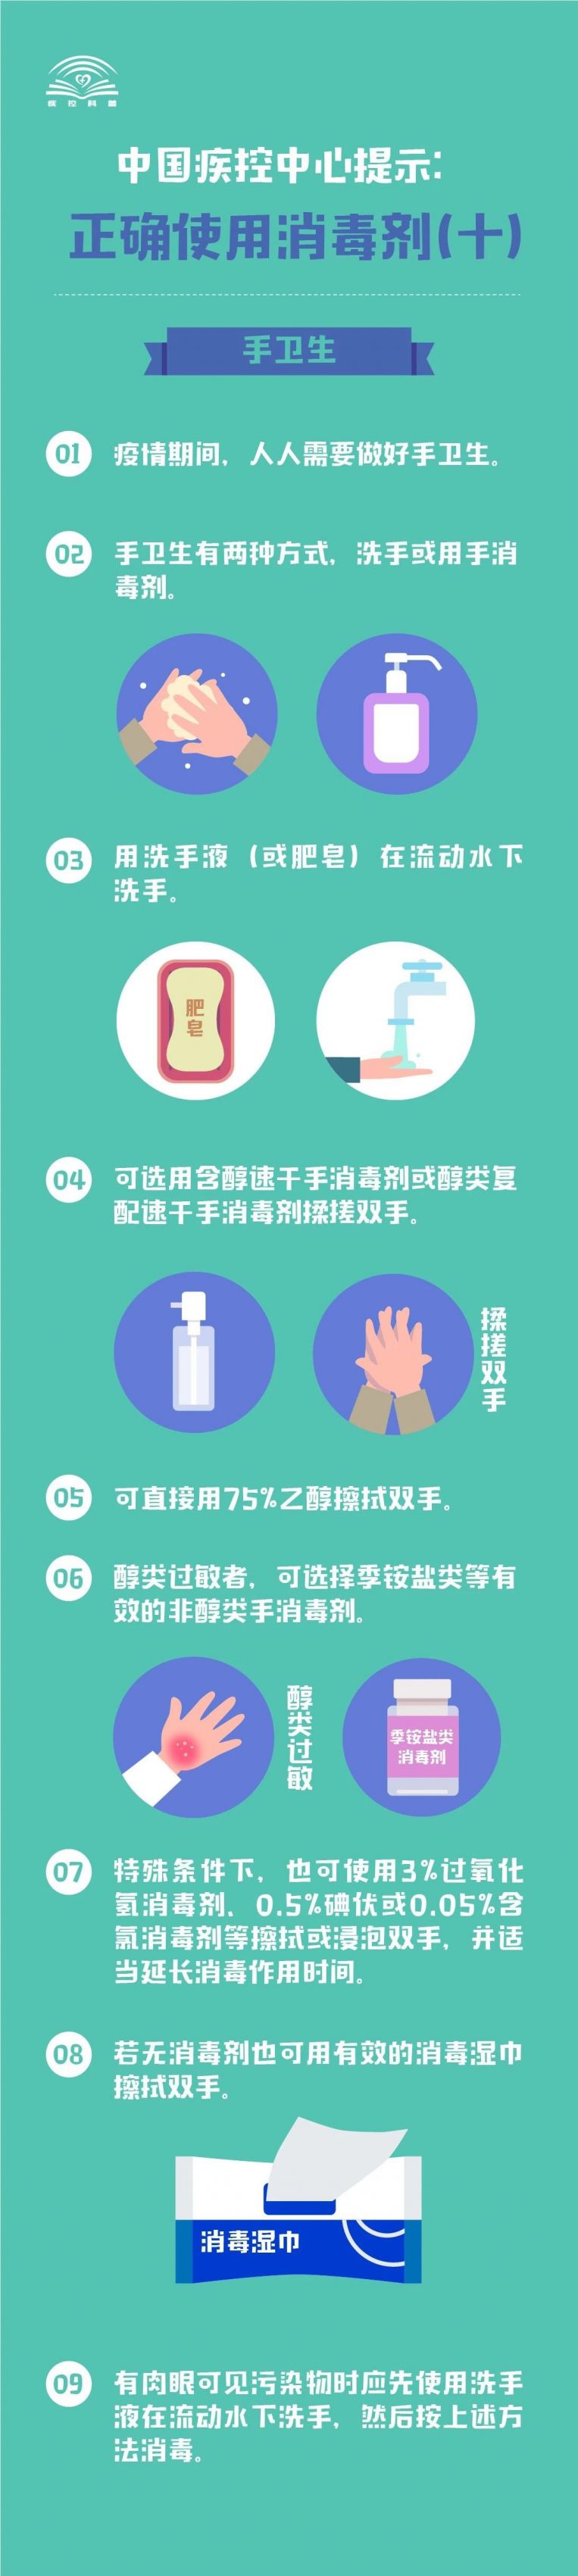 中国疾控中心提示:正确使用消毒剂(手卫生)